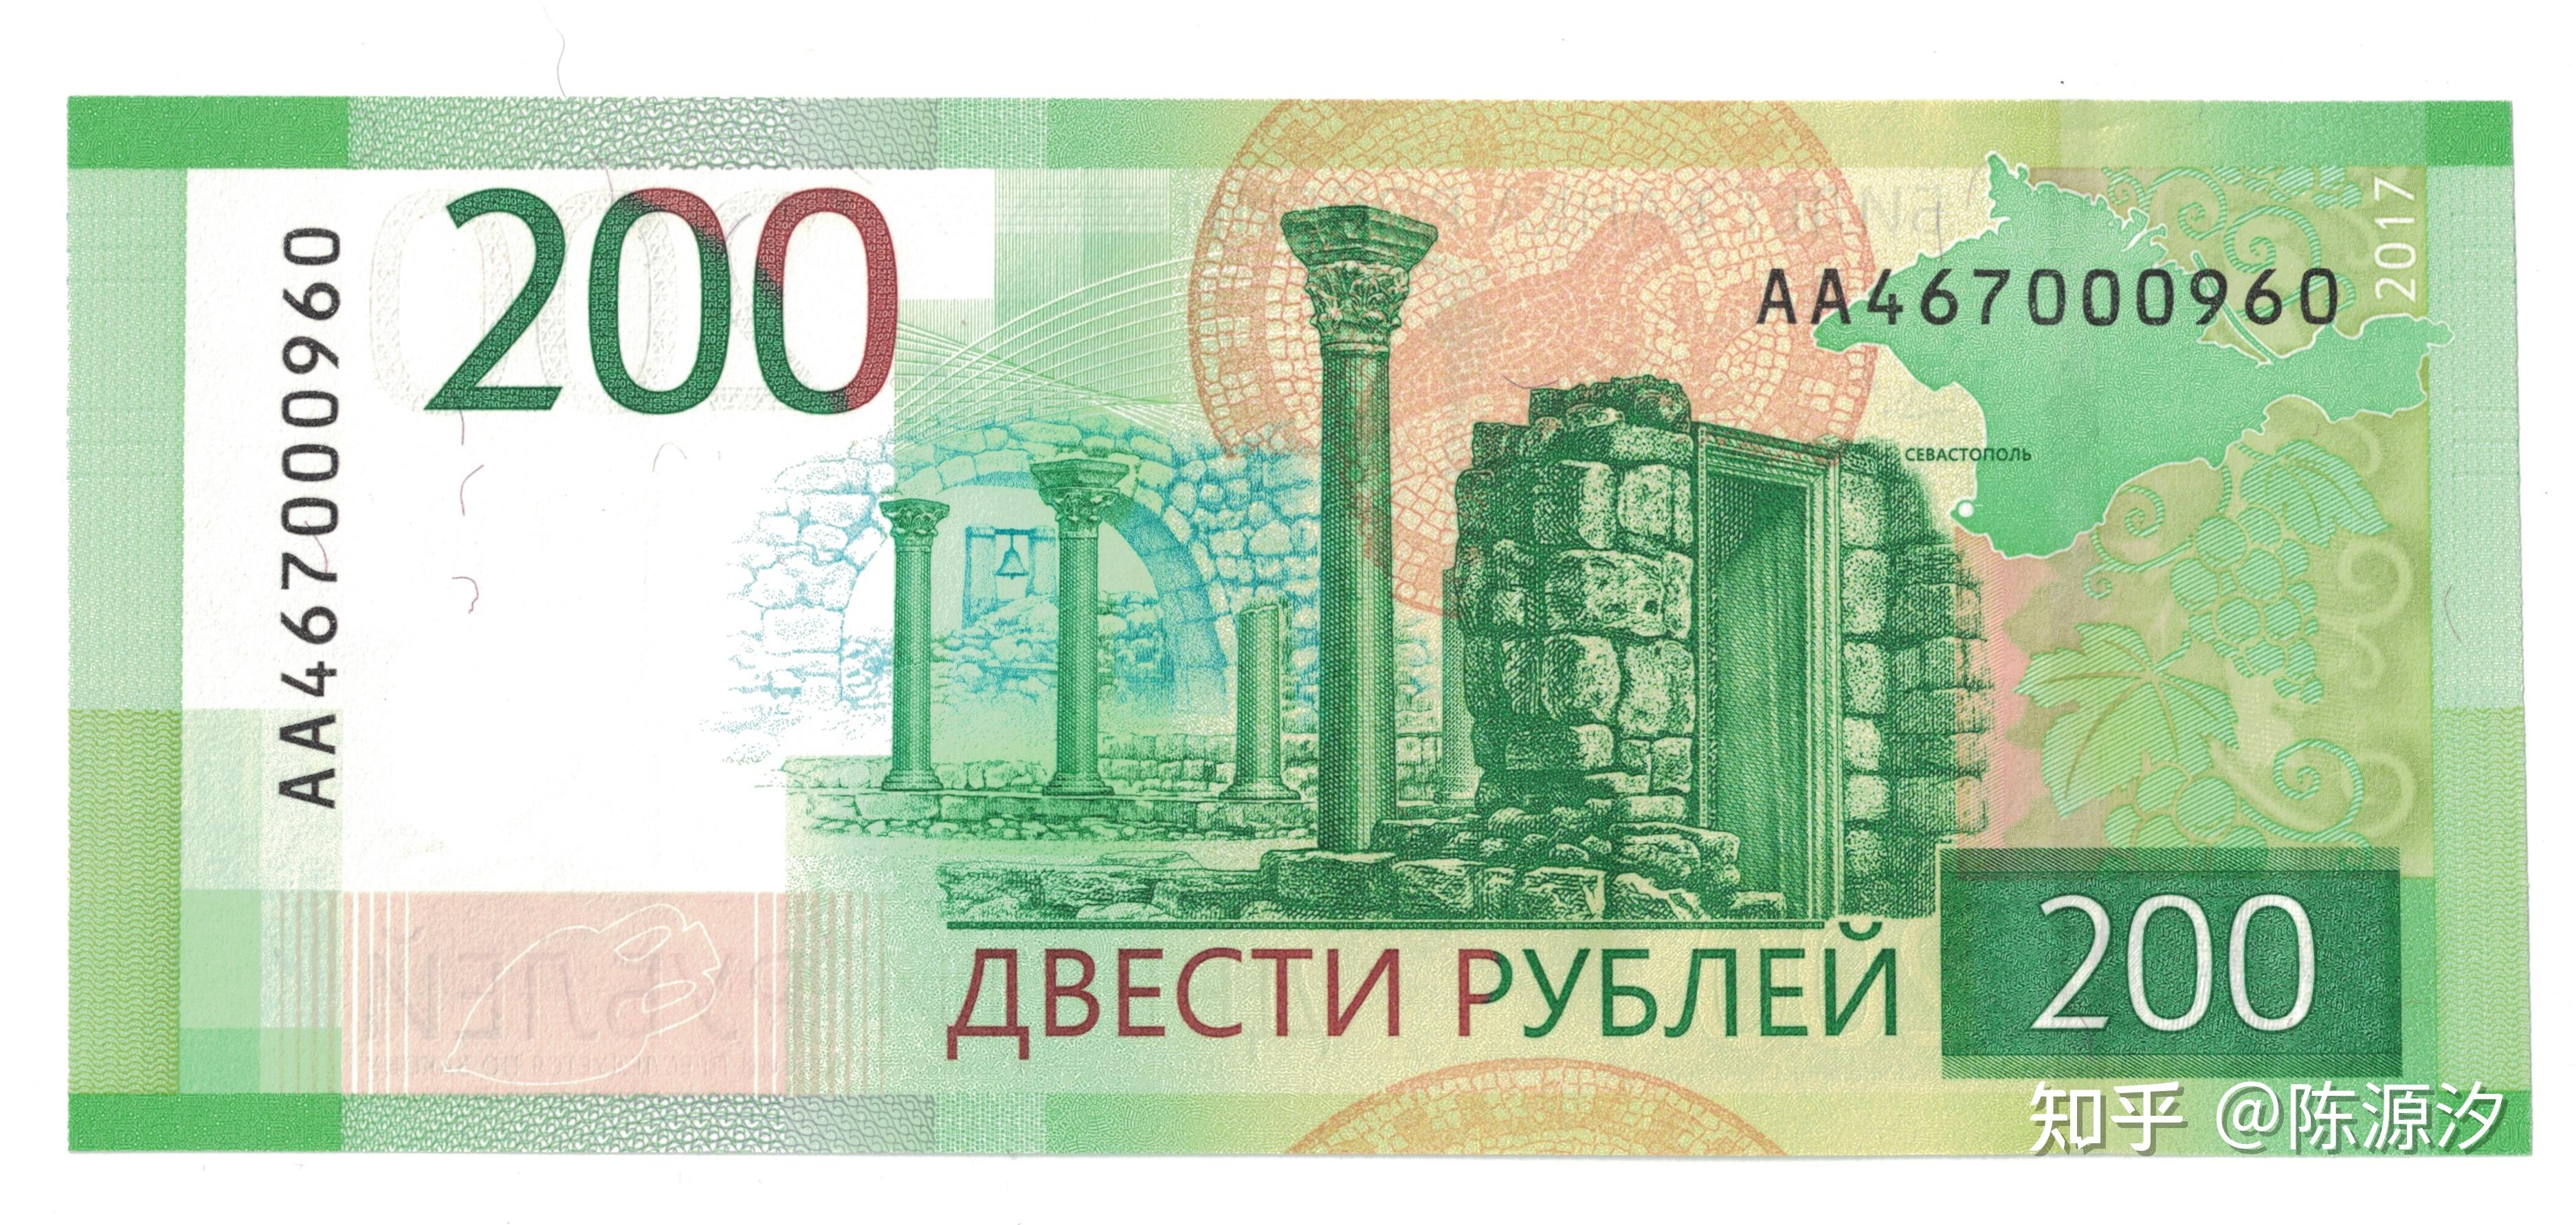 沙俄500卢布彼得大帝水印特价出_外国钱币_图片价格_收藏行情_7788集邮网